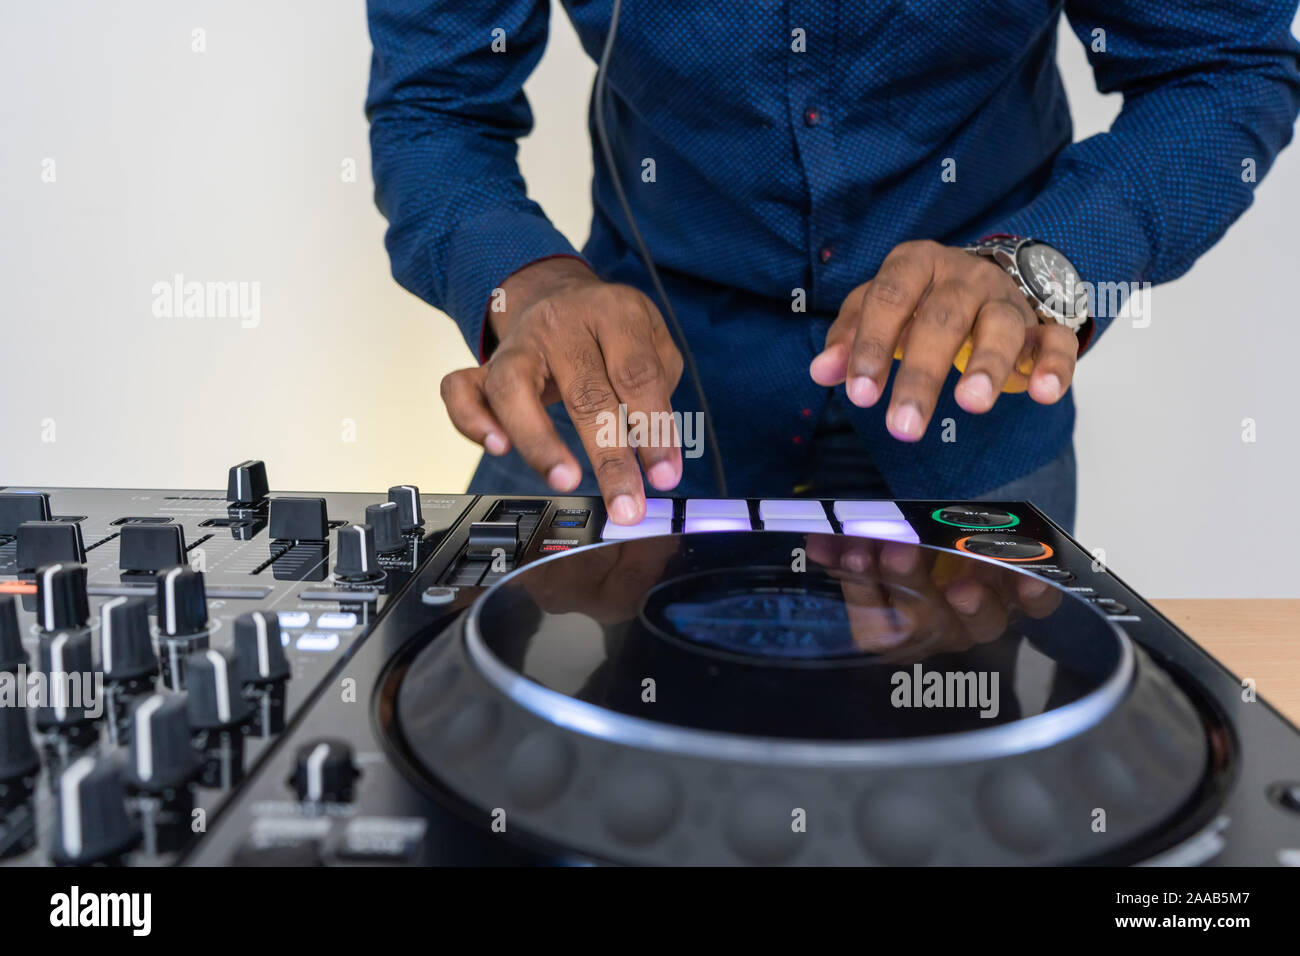 Máquina de ritmo dispositivo para el compositor de música electrónica.DJ Techno jugar y mezclar pistas musicales con modernos drum machine.Estudio de grabación de sonido profesional Foto de stock